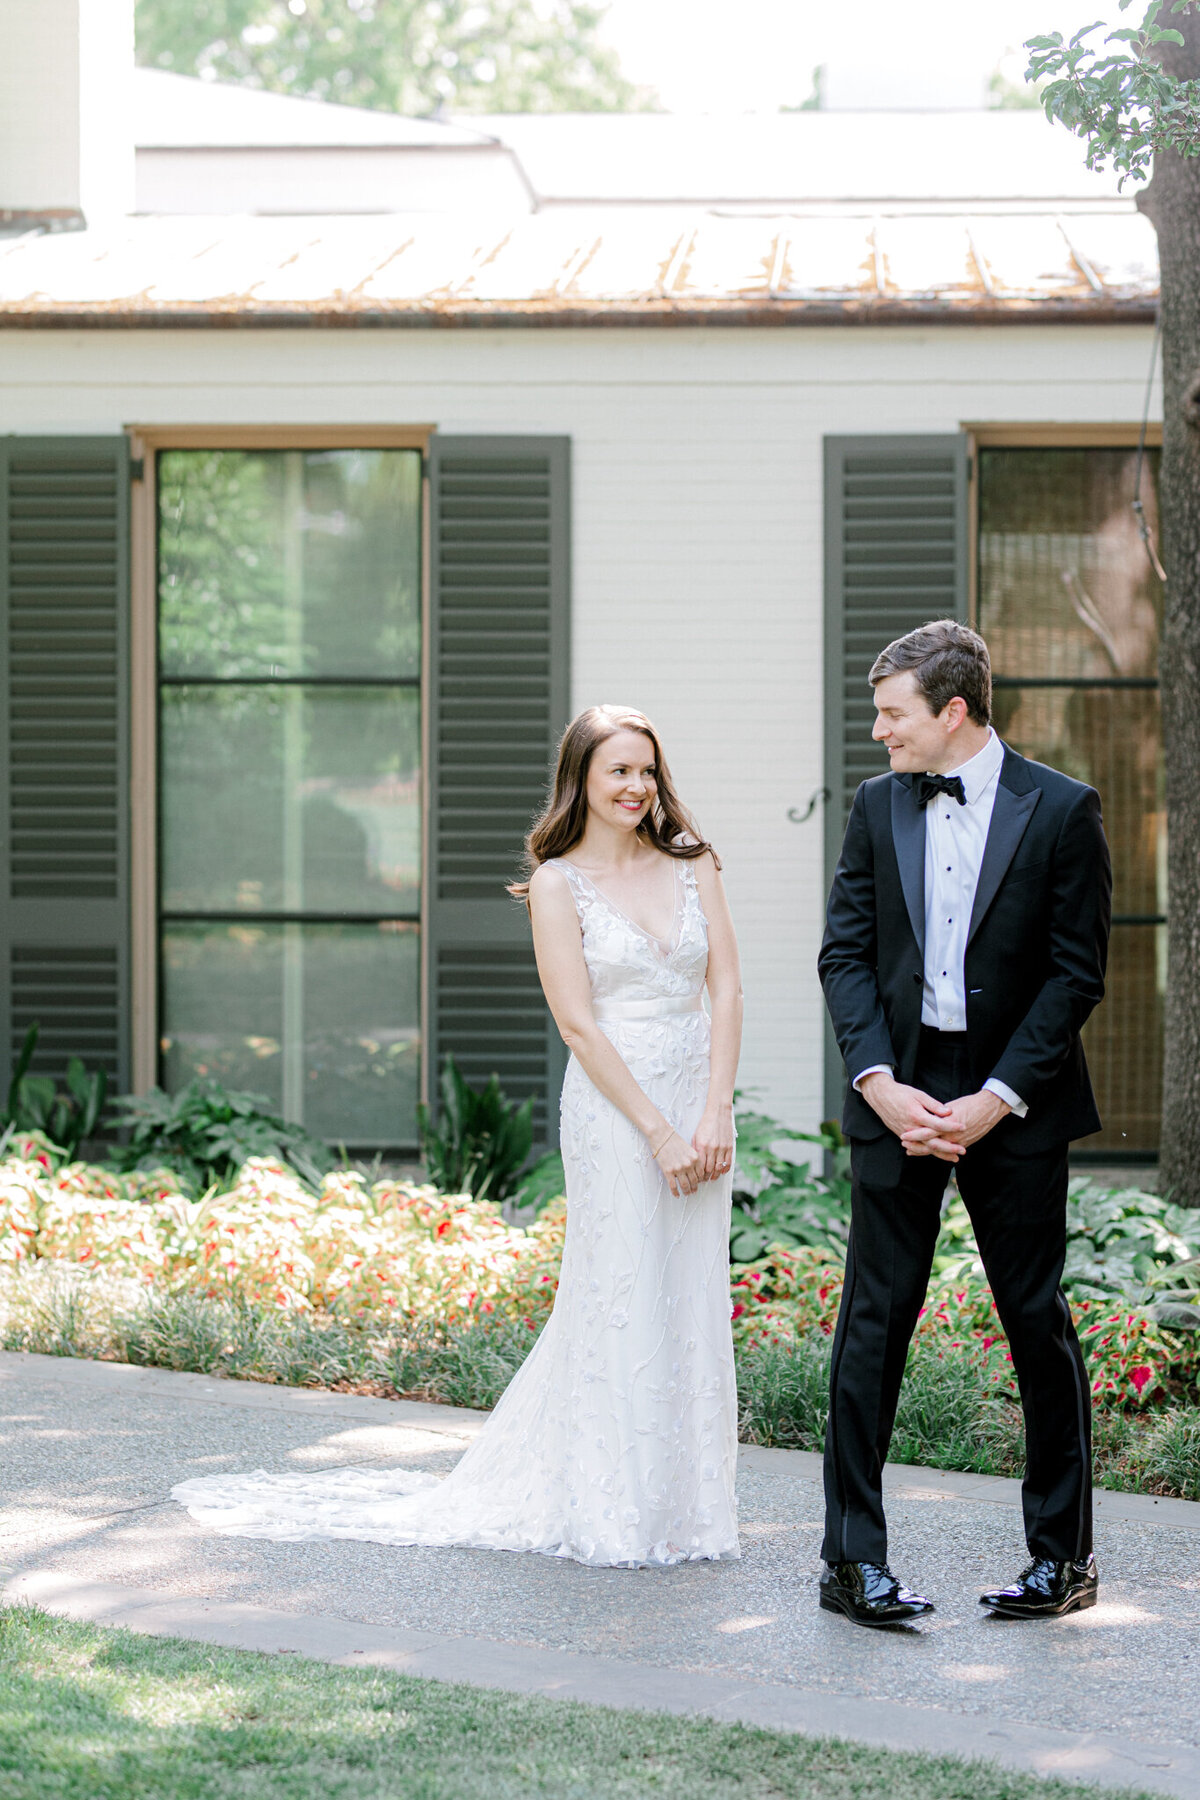 Gena & Matt's Wedding at the Dallas Arboretum | Dallas Wedding Photographer | Sami Kathryn Photography-64